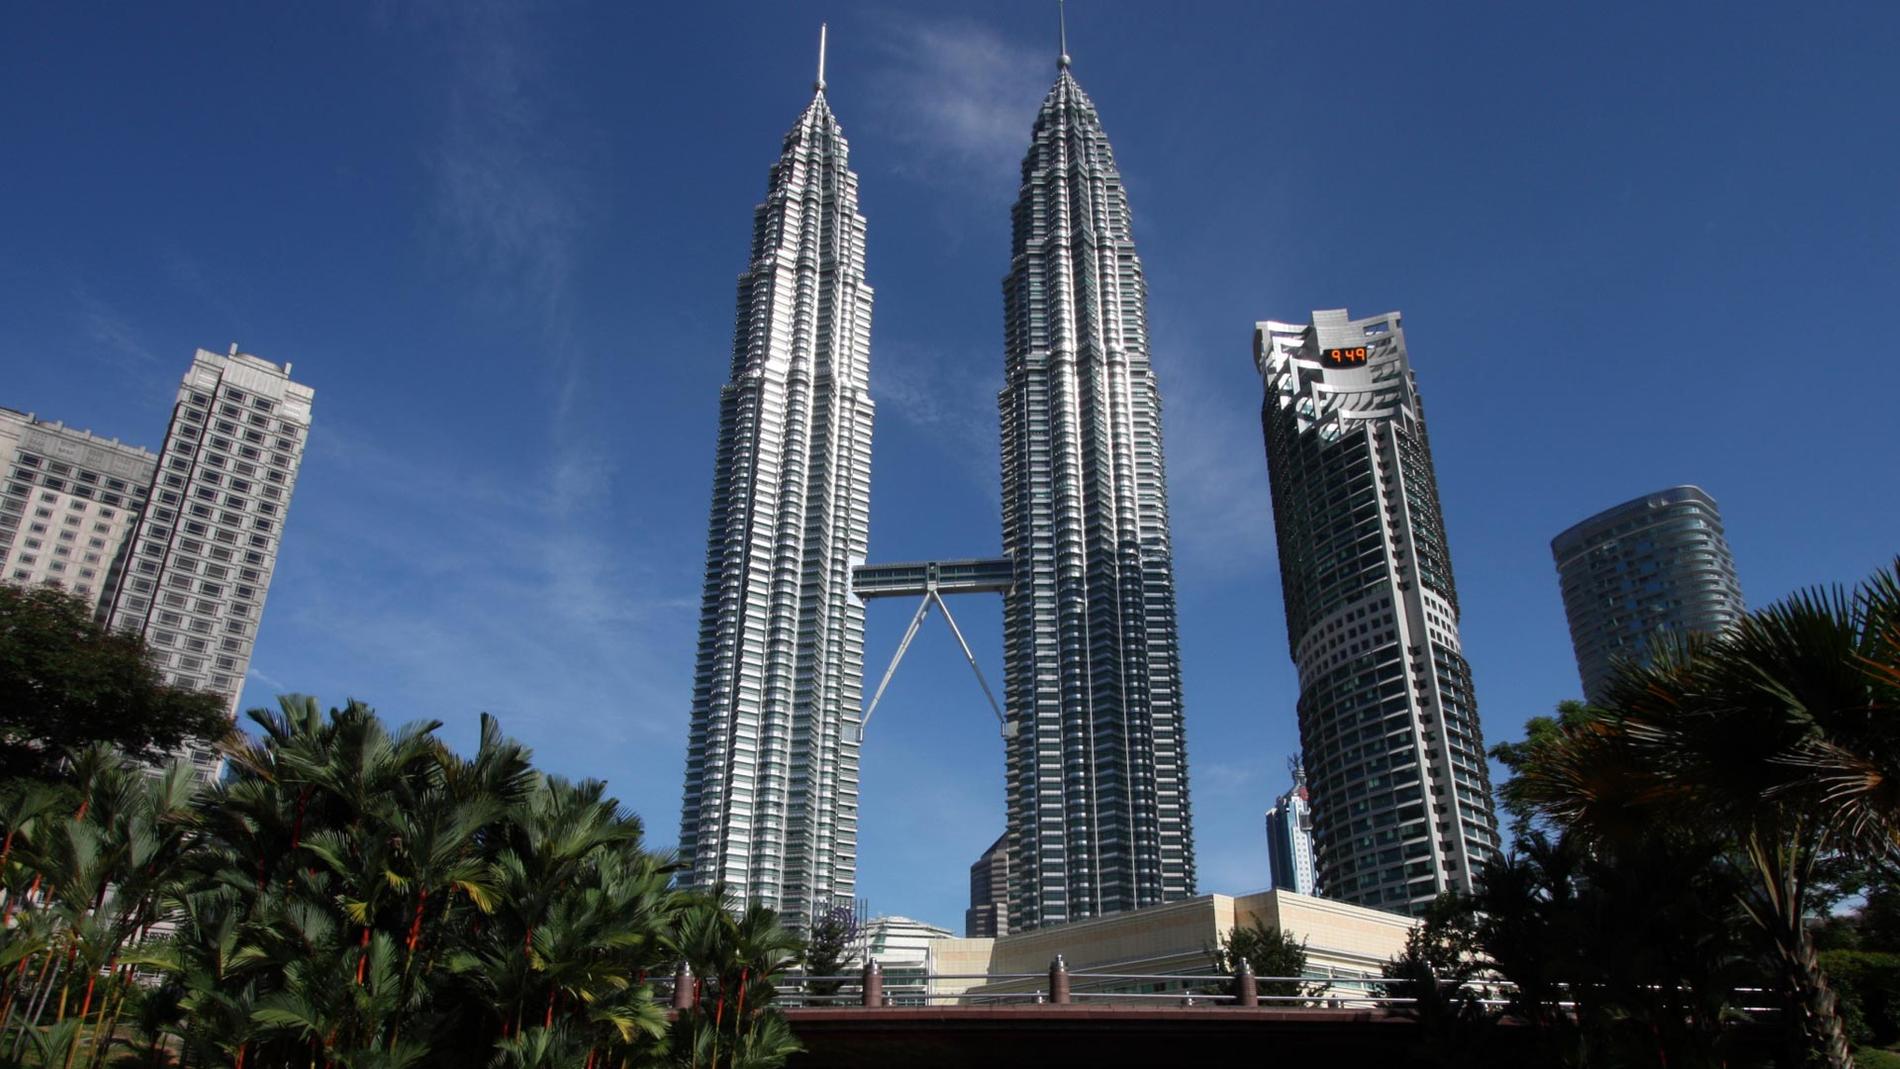 Vill du få mest shoppping för pengarna är Malaysias huvudstad Kuala Lumpur helt rätt. Under stans mest kända landmärke, Petronas tvillingtorn, ligger för övrigt en av många stora shoppinggallerior i centrala KL.